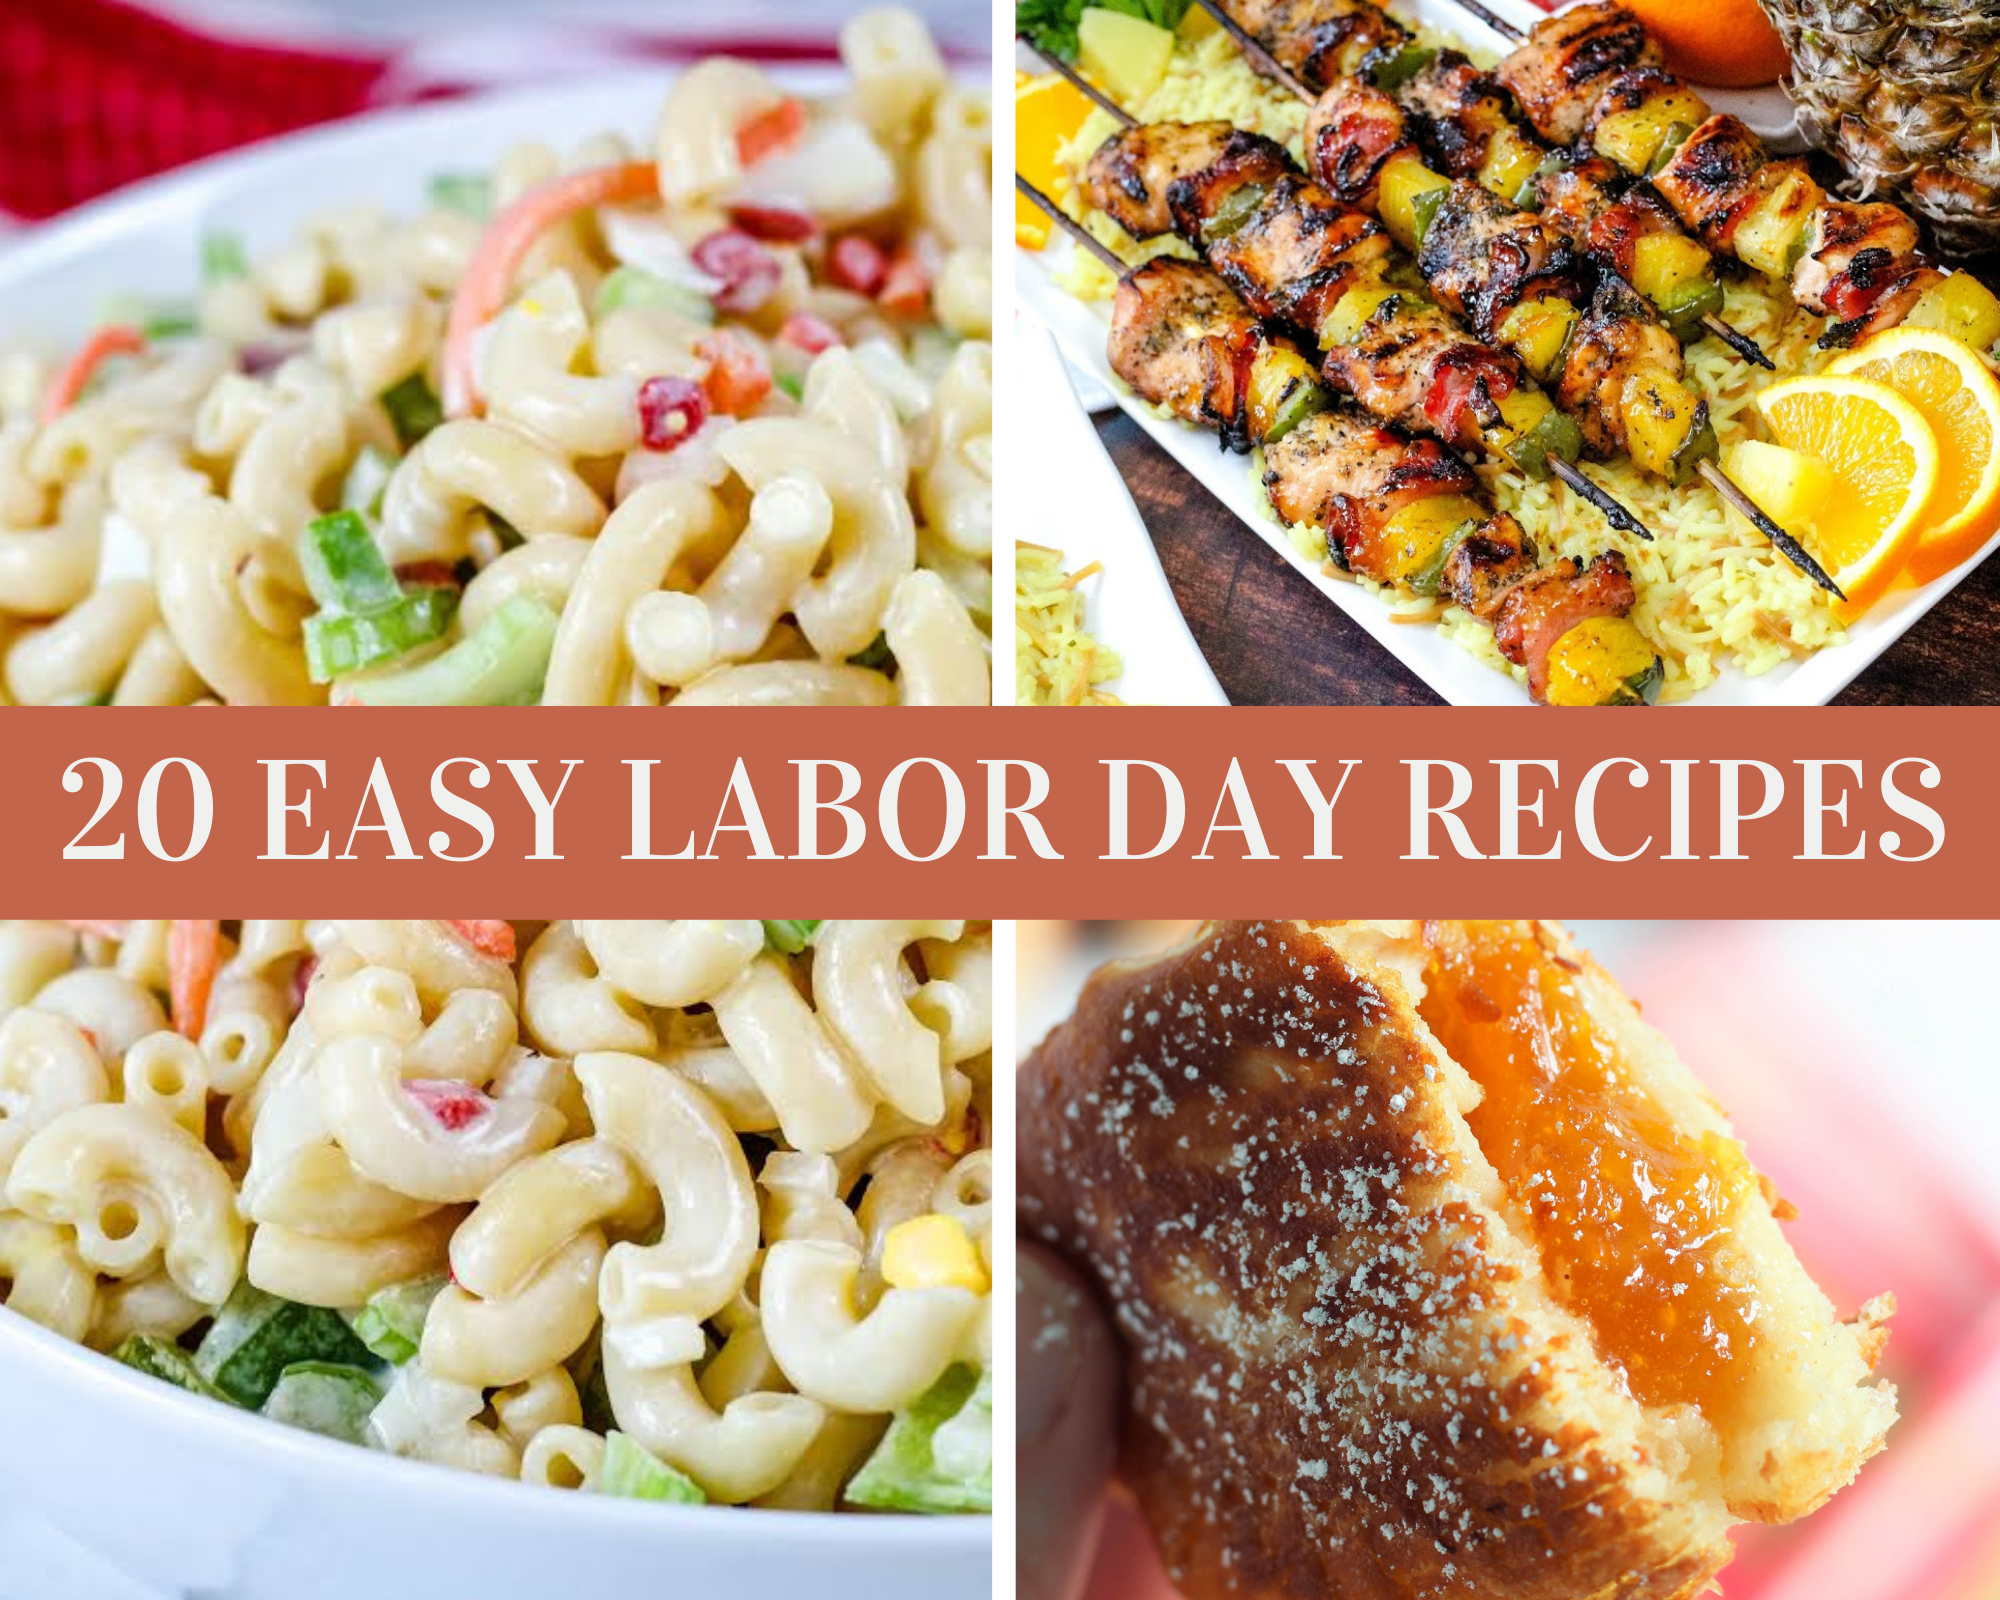 labor day recipes